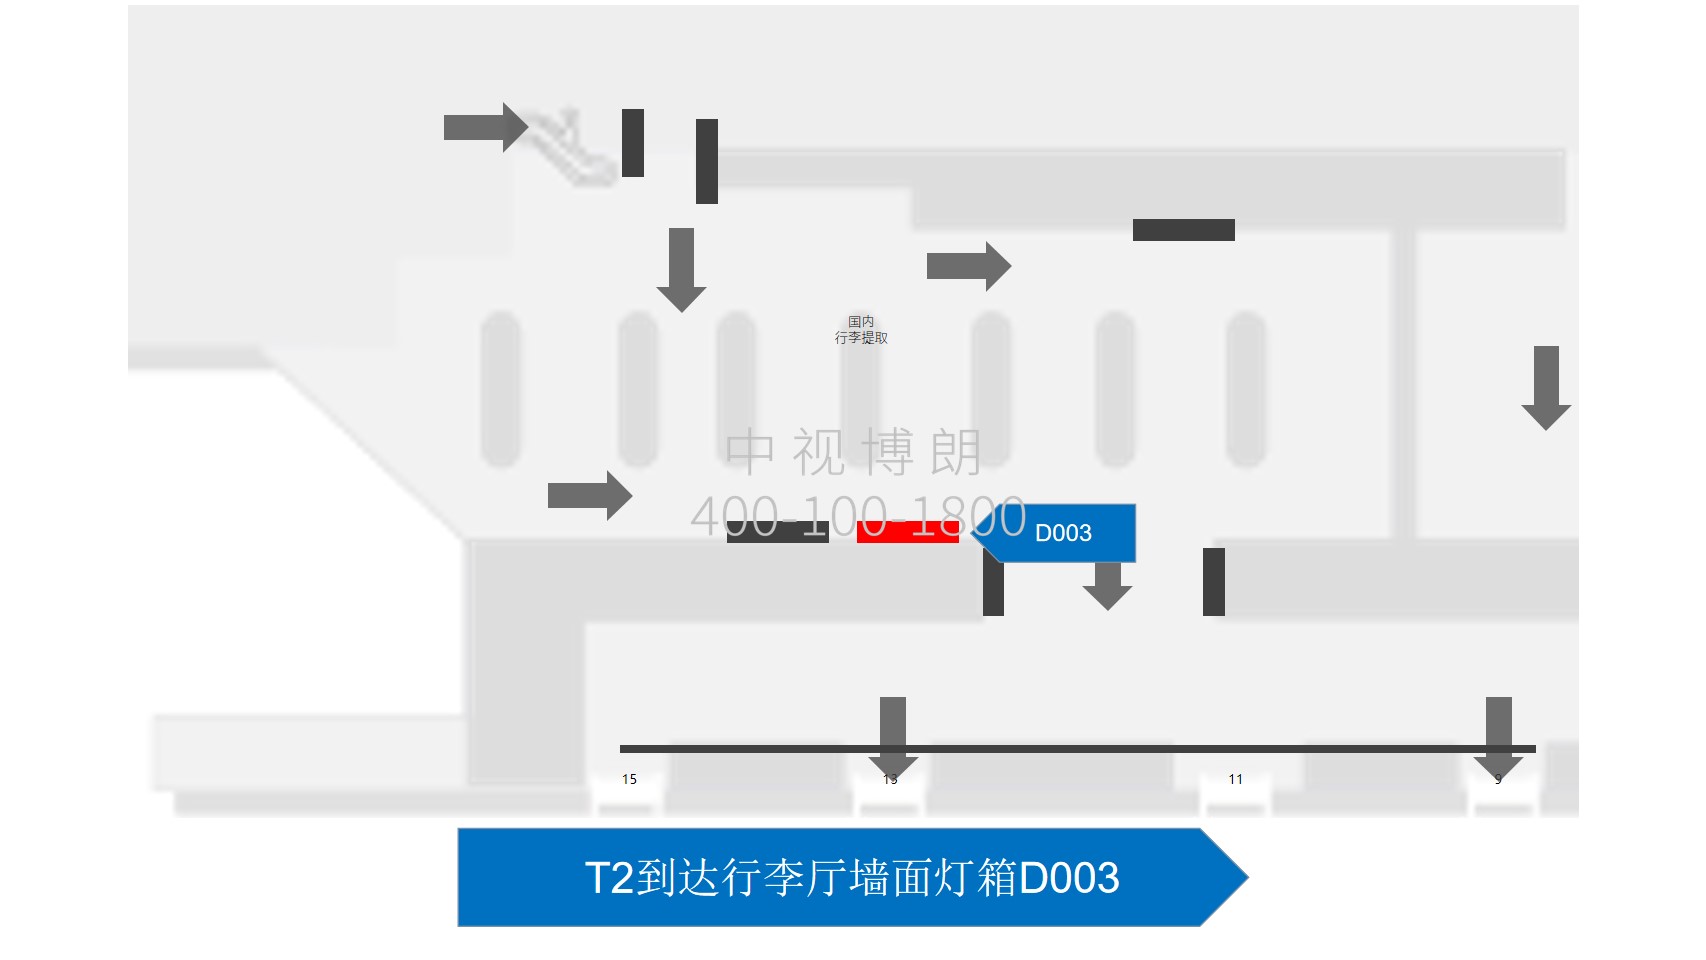 北京首都机场广告-T2到达行李厅墙面灯箱D003位置图